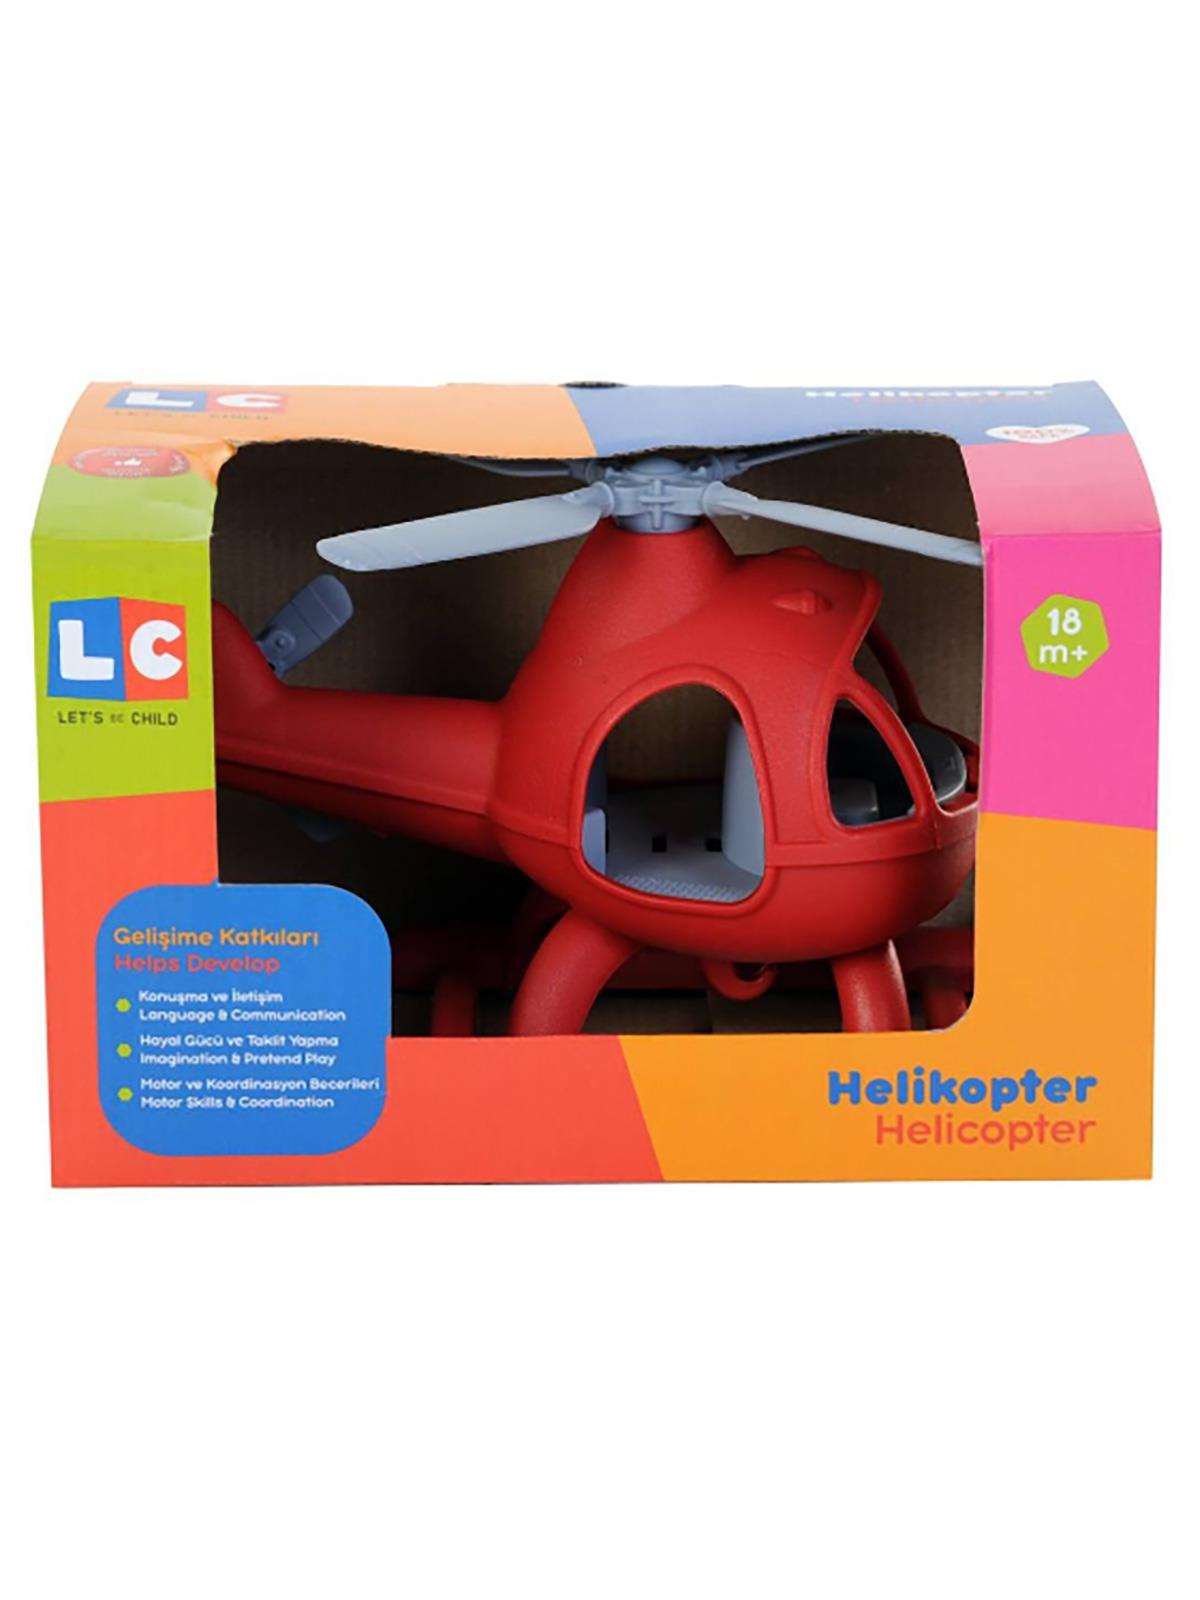 Let's Be Child Helikopter Kırmızı